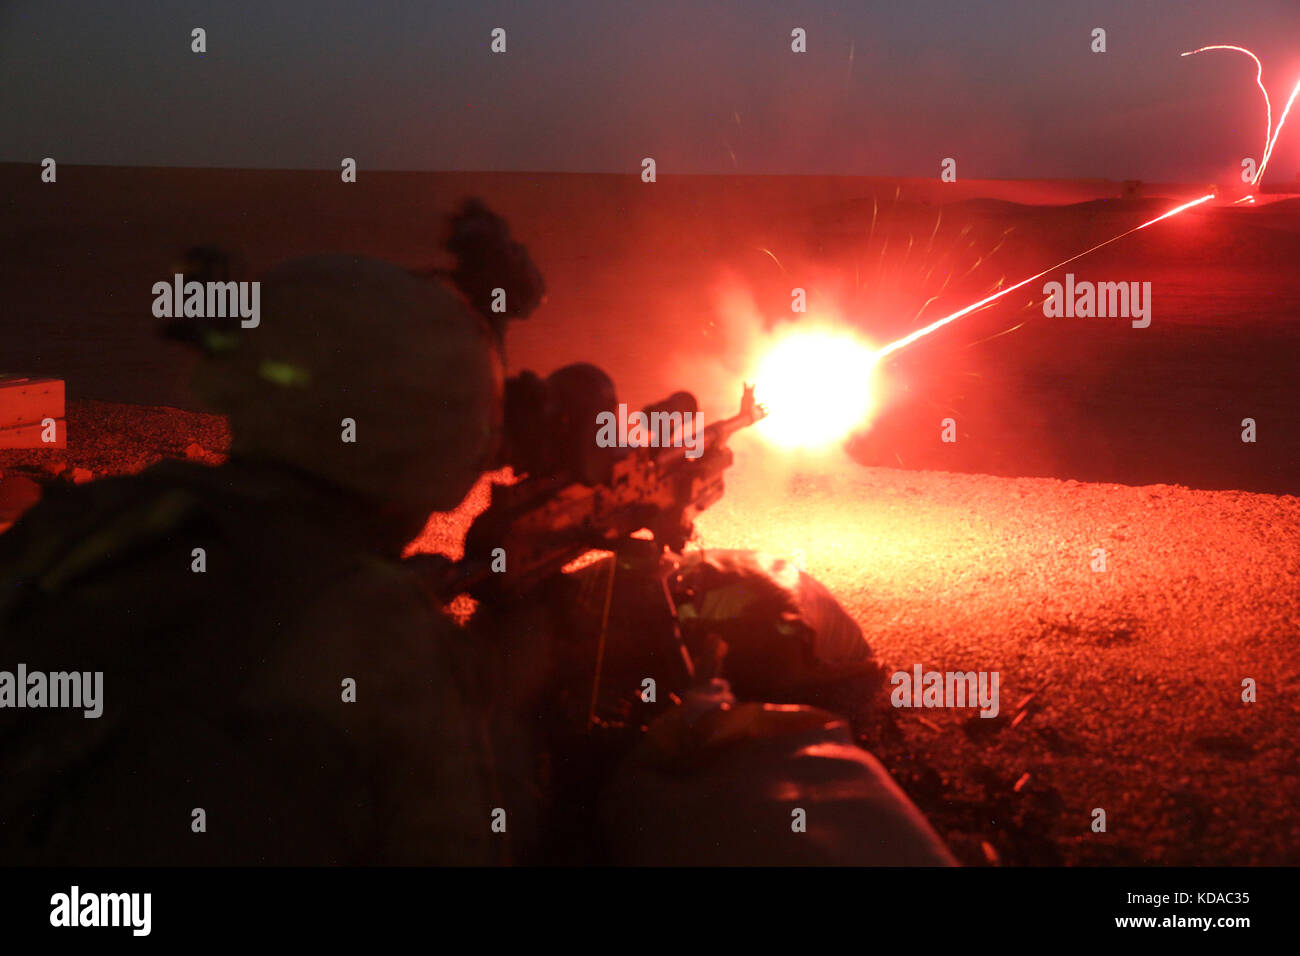 Un soldat du corps des marines des États-Unis tire un tracer à partir d'une ronde m240g machine gun pendant une nuit de tir réel d'entraînement au camp shorabak 25 juin 2017 près de Lashkar Gah, dans la province d'Helmand, en Afghanistan. Banque D'Images